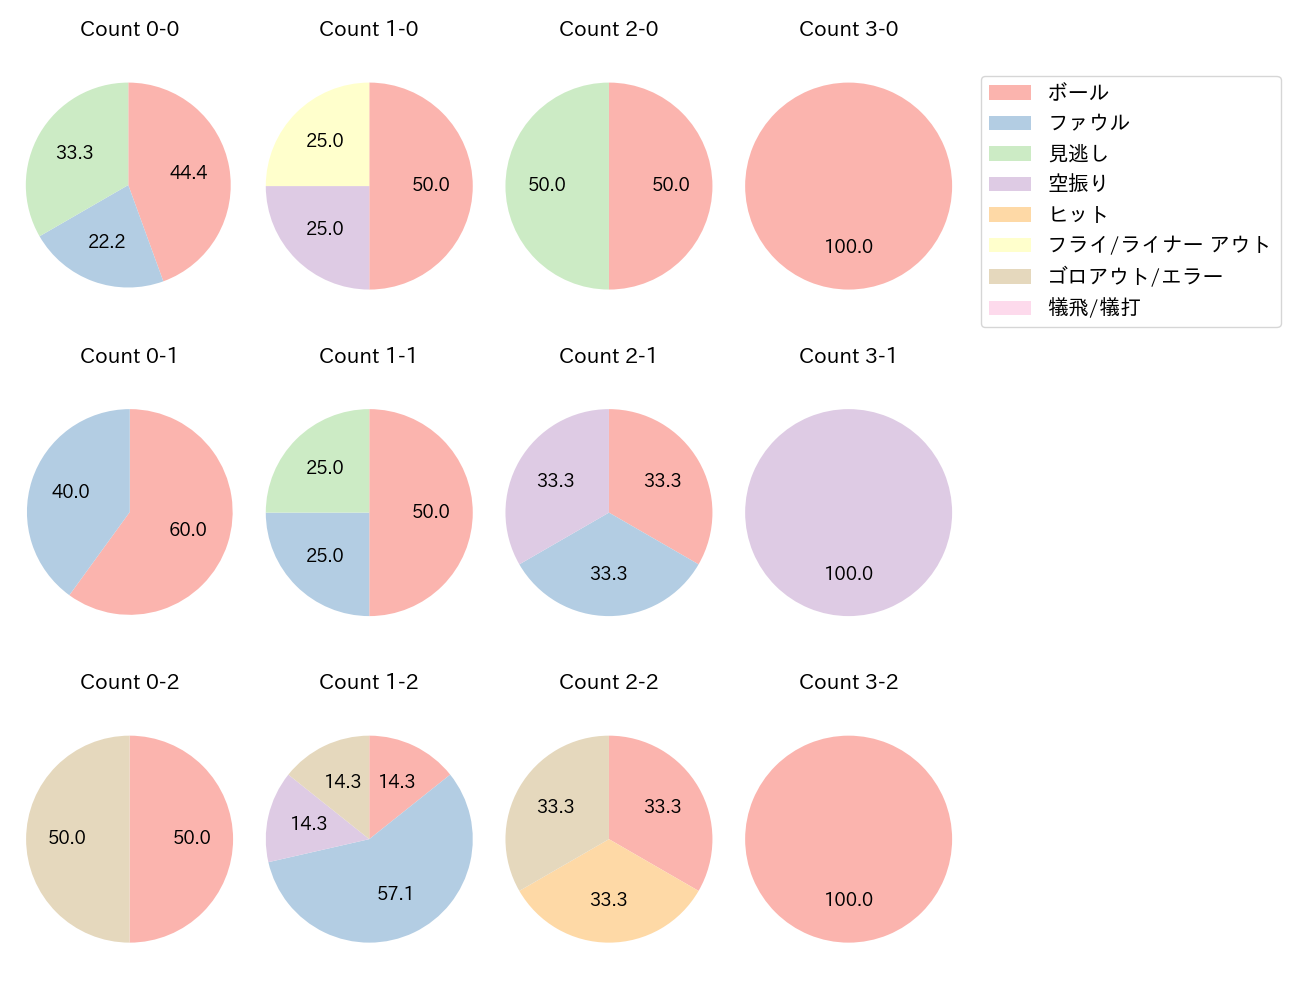 石川 慎吾の球数分布(2021年4月)